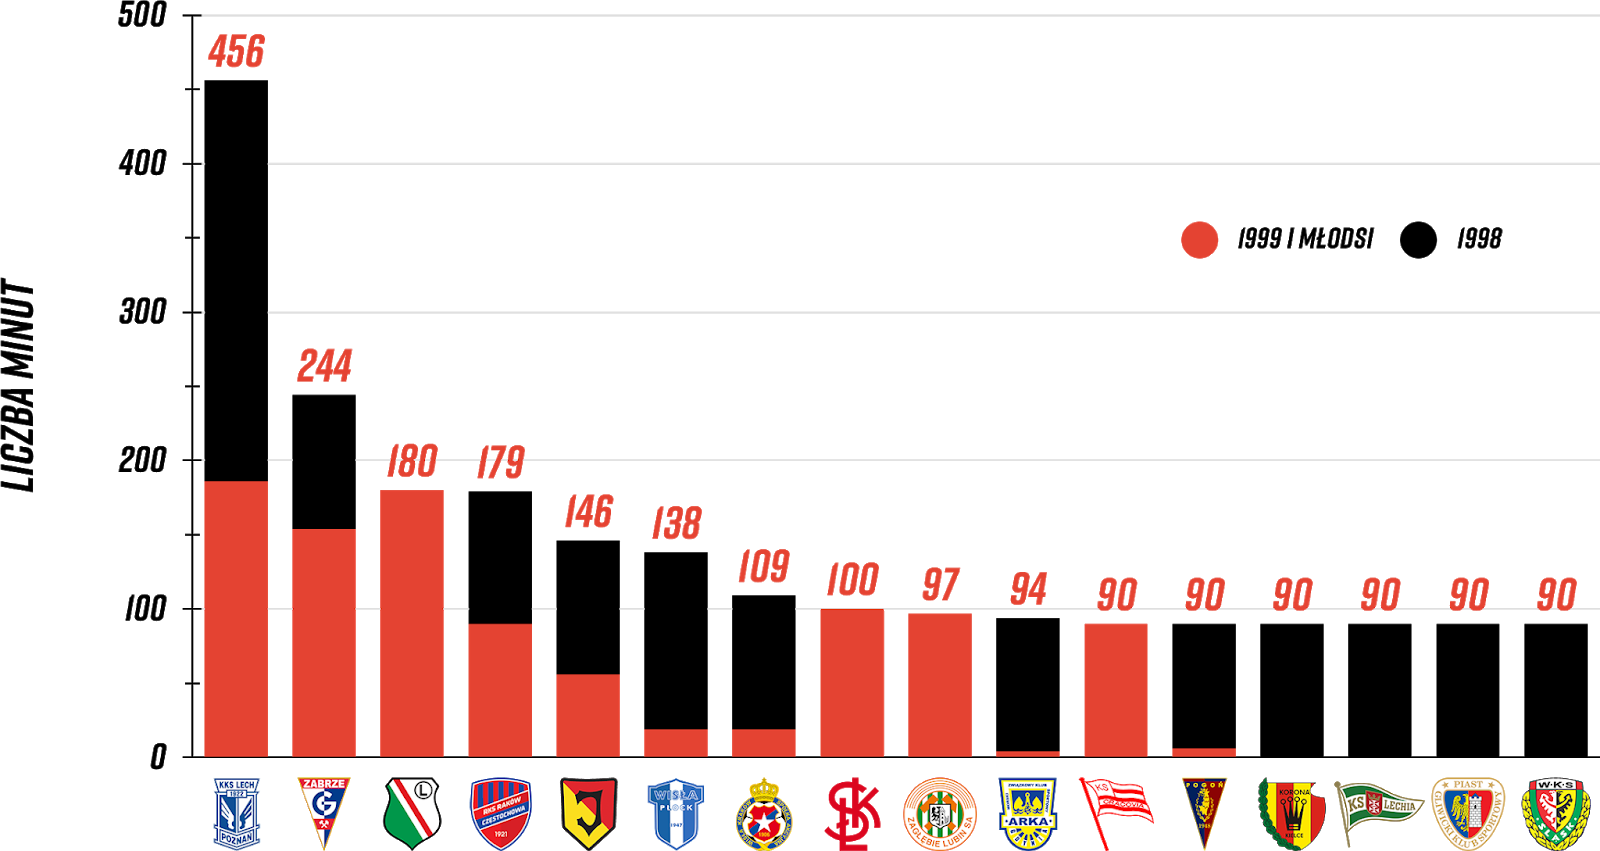 Klasyfikacja klubów pod względem rozegranych minut przez młodzieżowców w 9. kolejce PKO Ekstraklasy<br><br>Źródło: Opracowanie własne na podstawie ekstrastats.pl<br><br>graf. Bartosz Urban